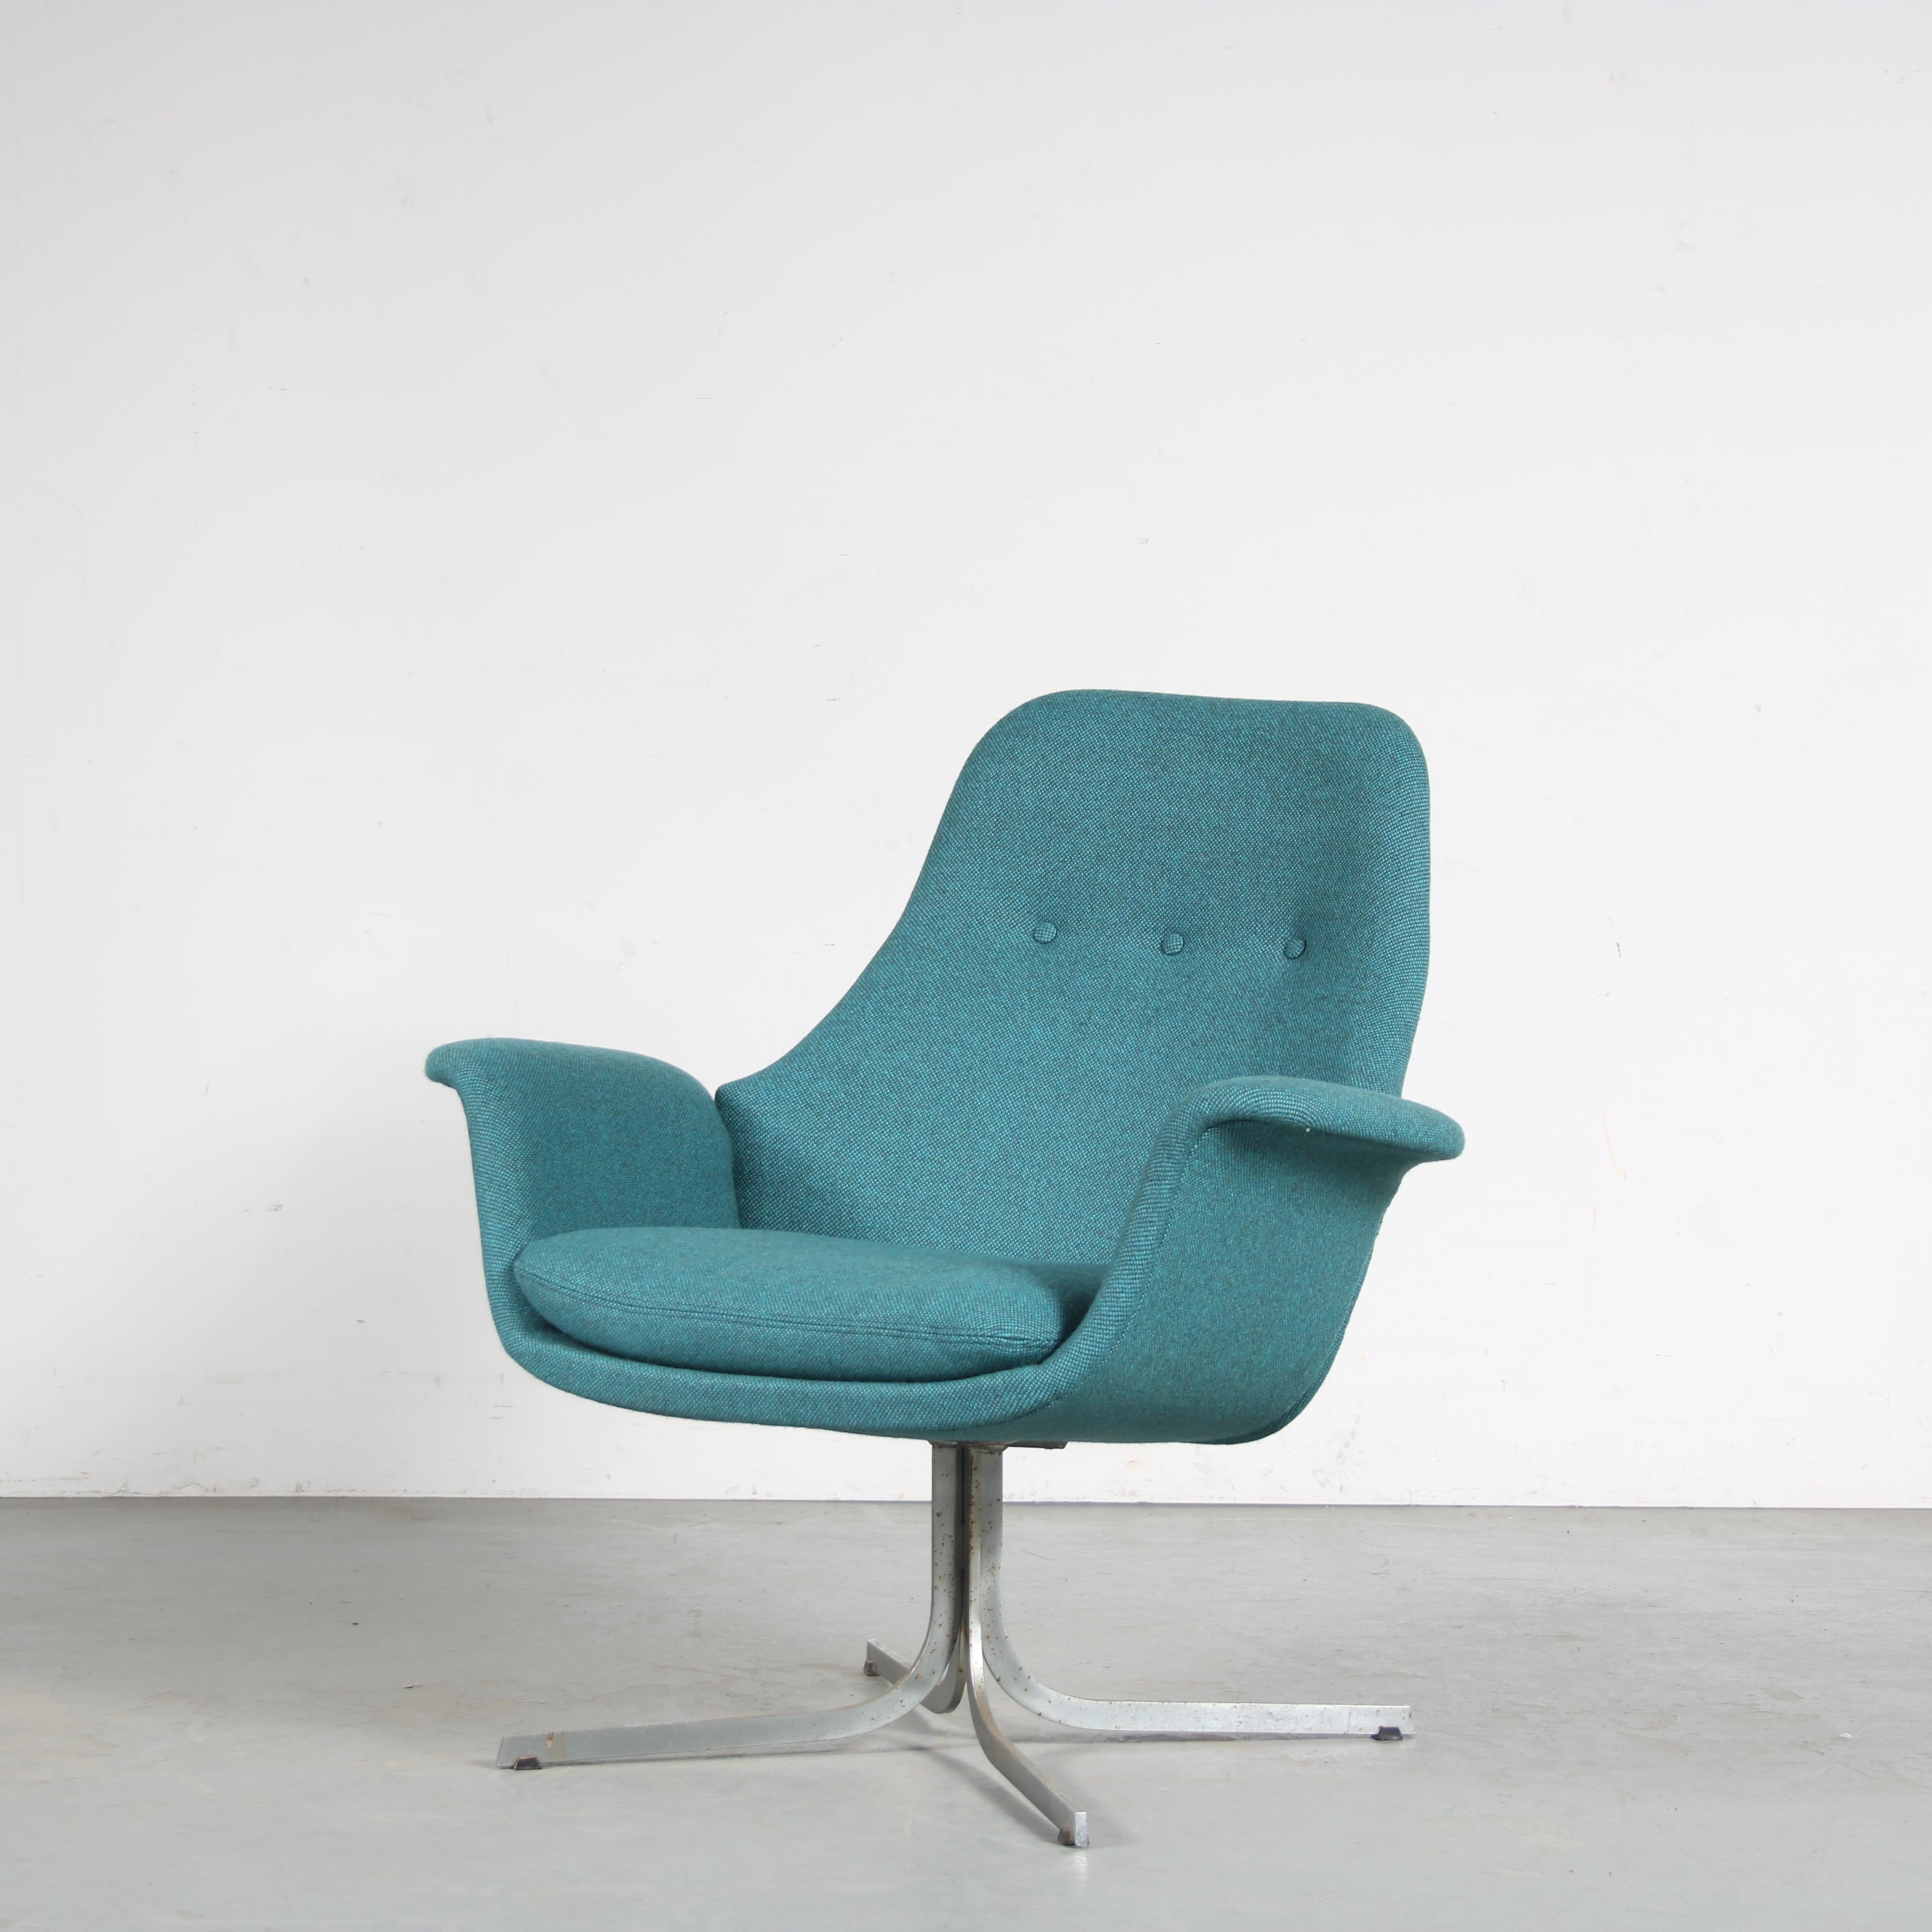 

Un modèle rare de chaise longue conçu par Pierre Paulin, fabriqué par Artifort aux Pays-Bas vers 1960.

Cette pièce accrocheuse est d'une grande élégance. Le siège est joliment courbé en forme de tulipe. Les détails courbes sont typiques des